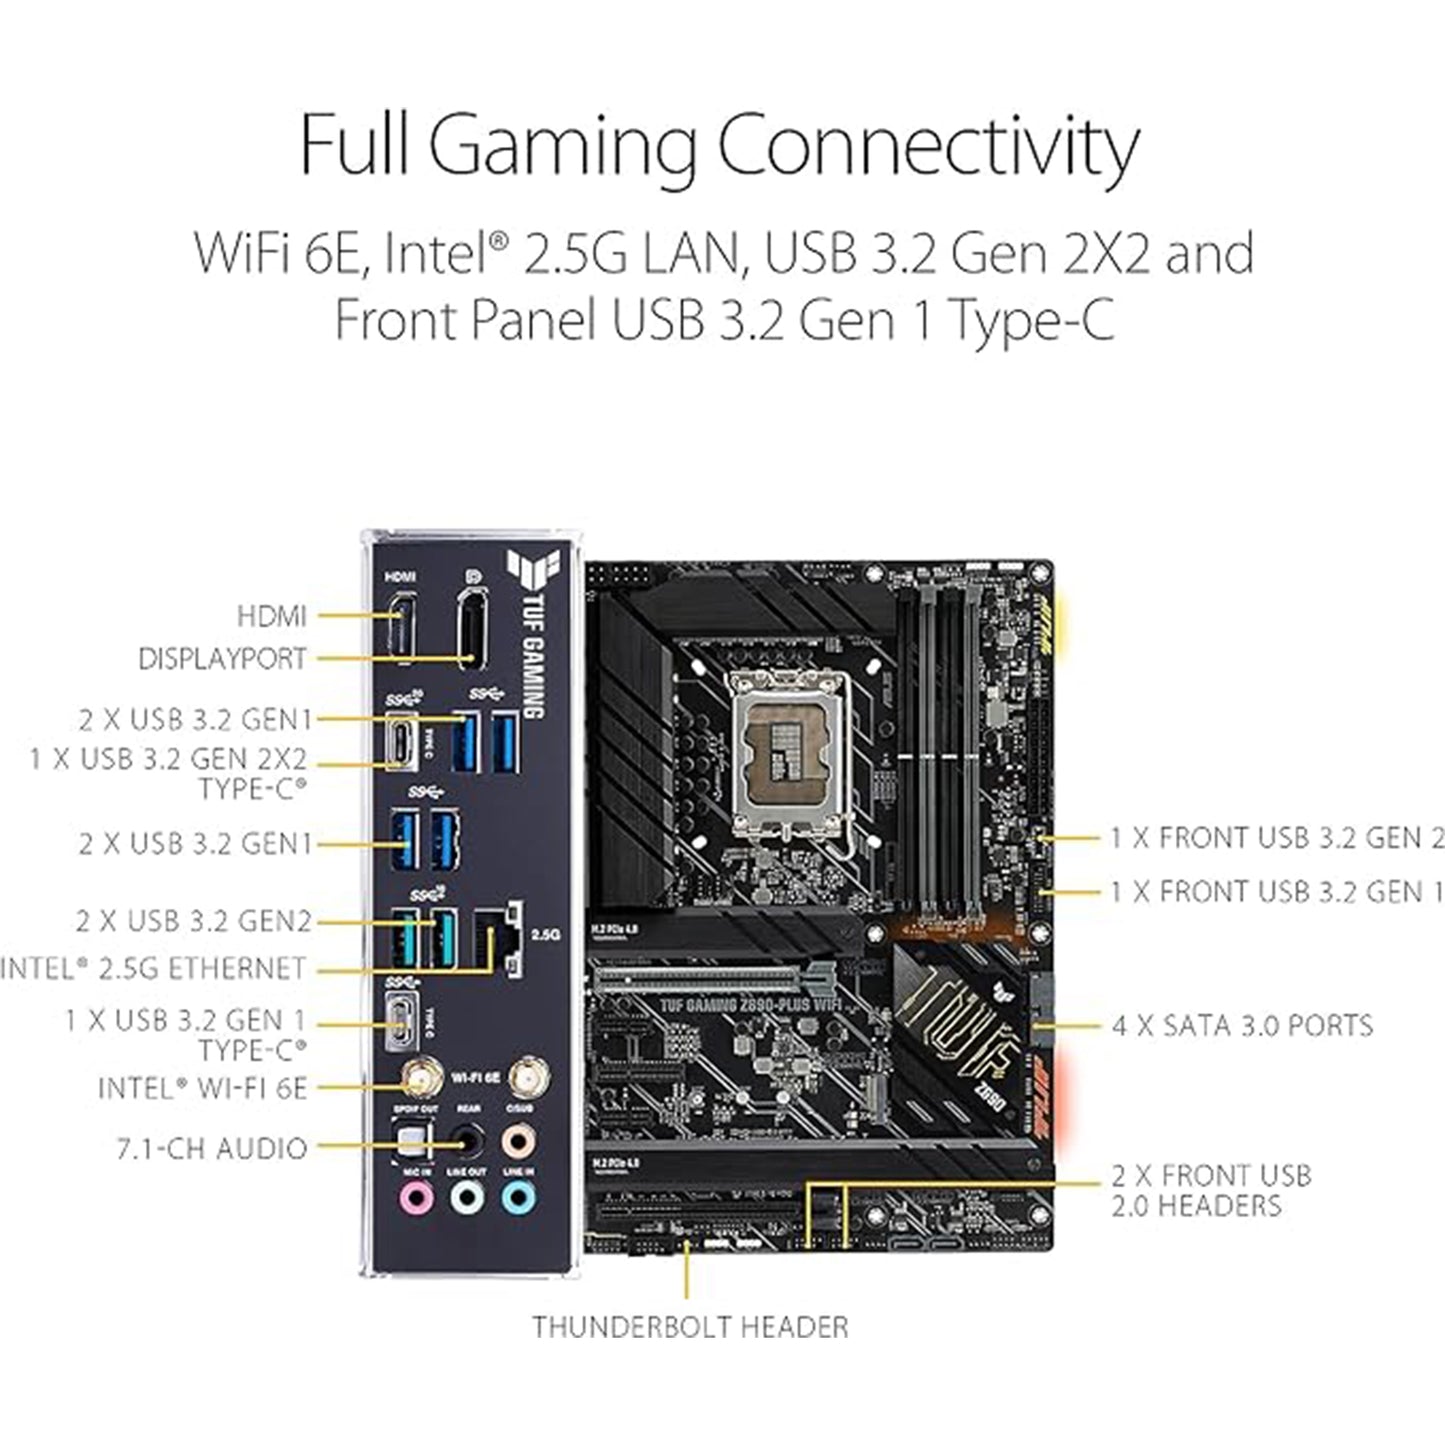 معالج Micro Center Intel Core i9-12900K 16 نواة يصل إلى 5.2 جيجا هرتز معالج سطح المكتب غير مقفل مع حزمة Intel UHD Graphics 770 المدمجة مع اللوحة الأم ASUS TUF Gaming Z690-PLUS WiFi LGA1700 DDR5 ATX 